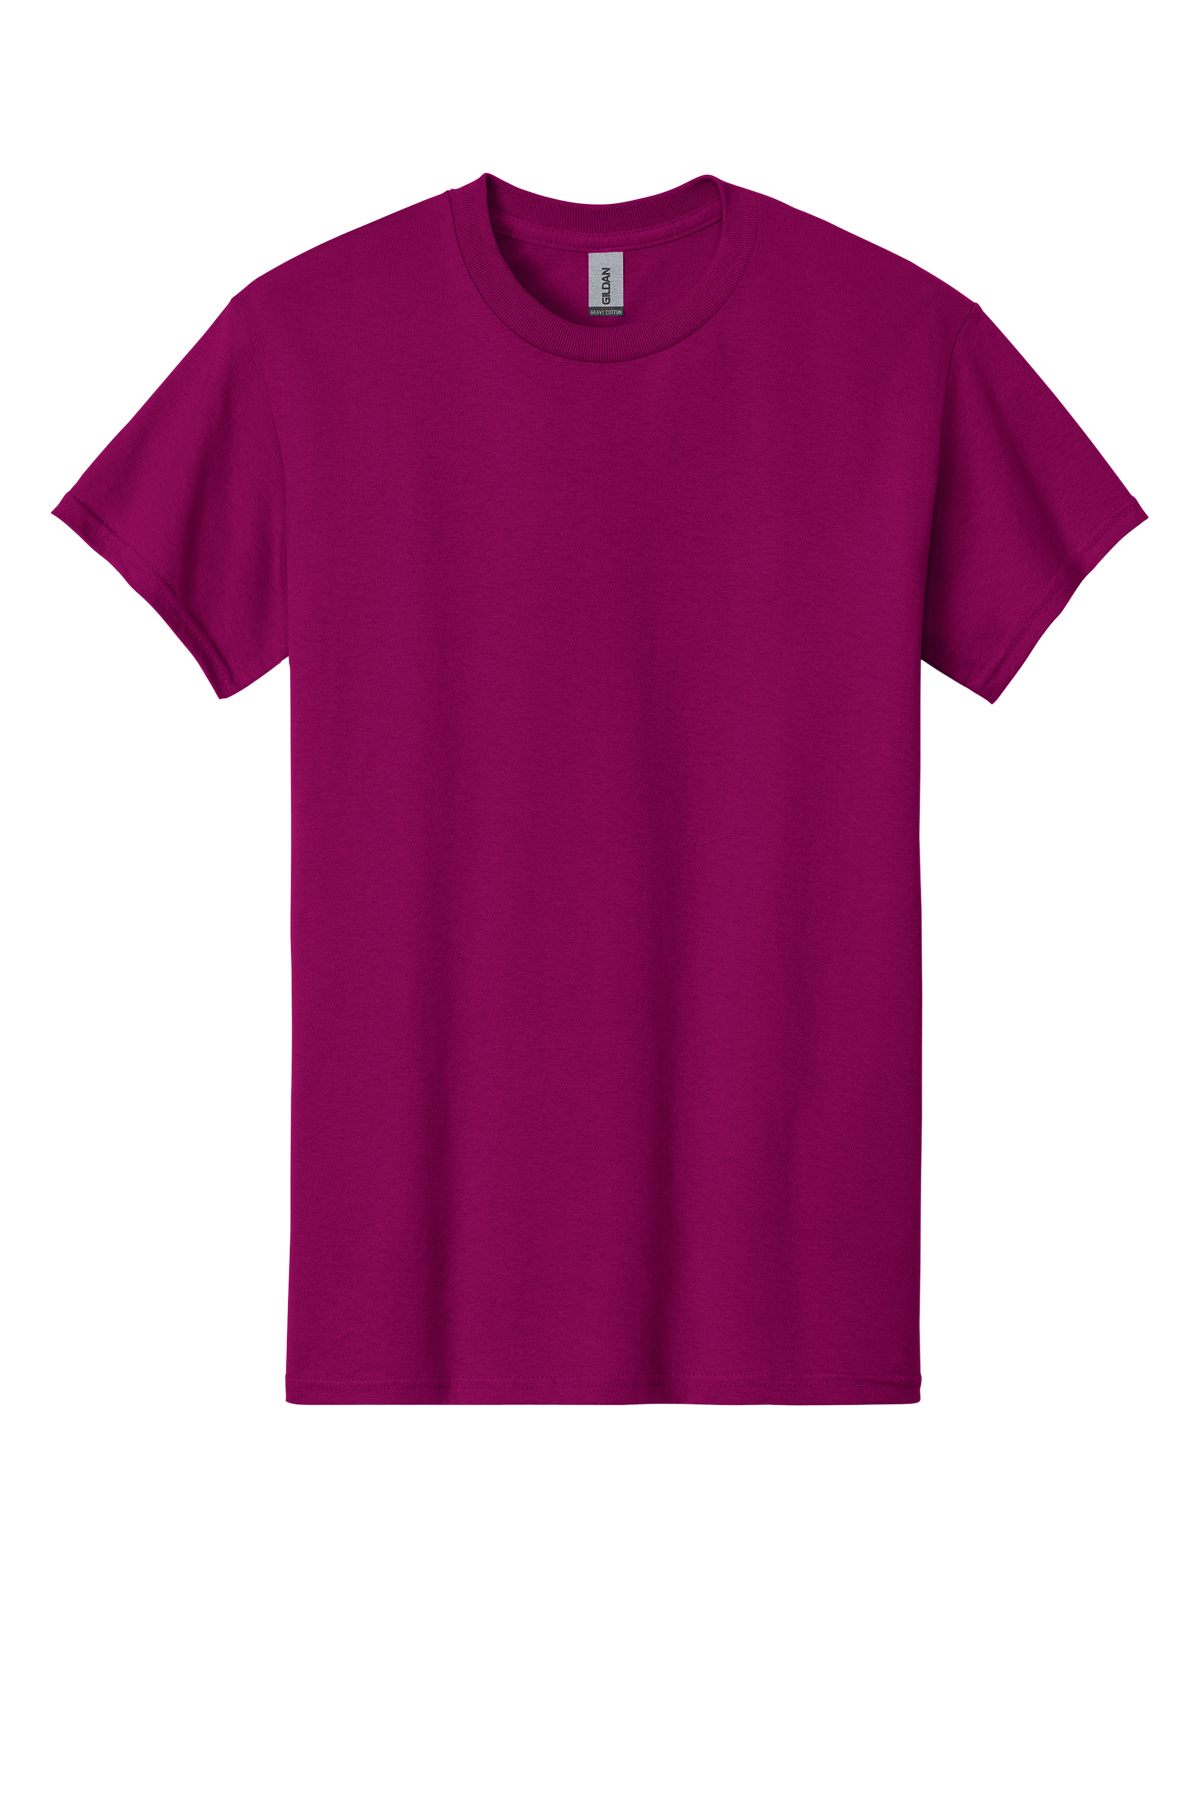 | - Heavy T-Shirt Product 100% Gildan Cotton SanMar Cotton |